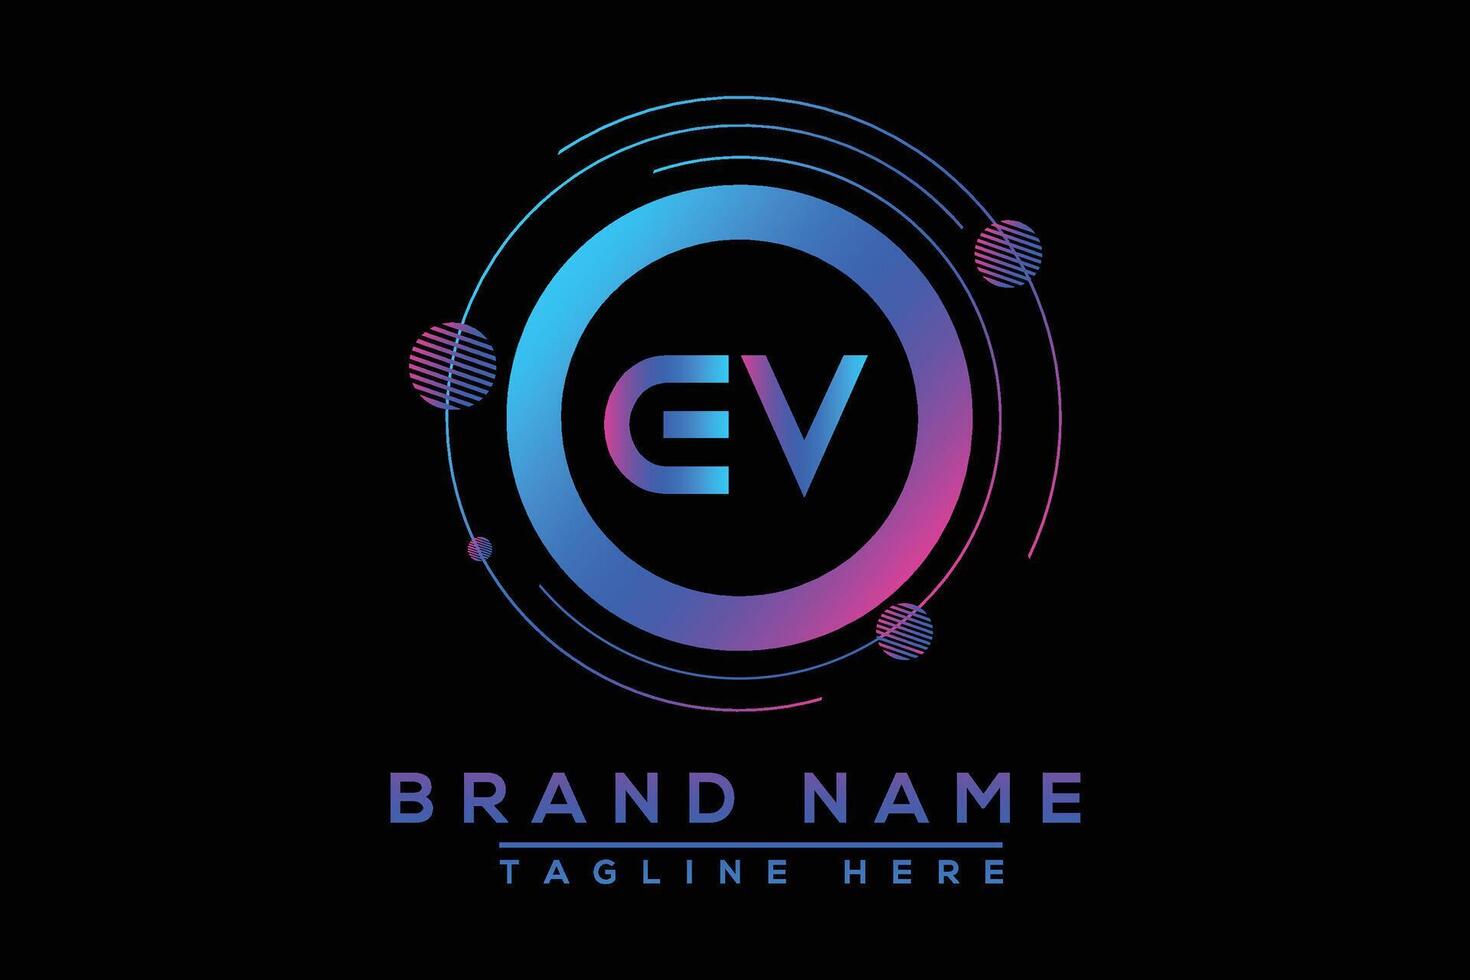 EV letter logo design. Vector logo design for business.